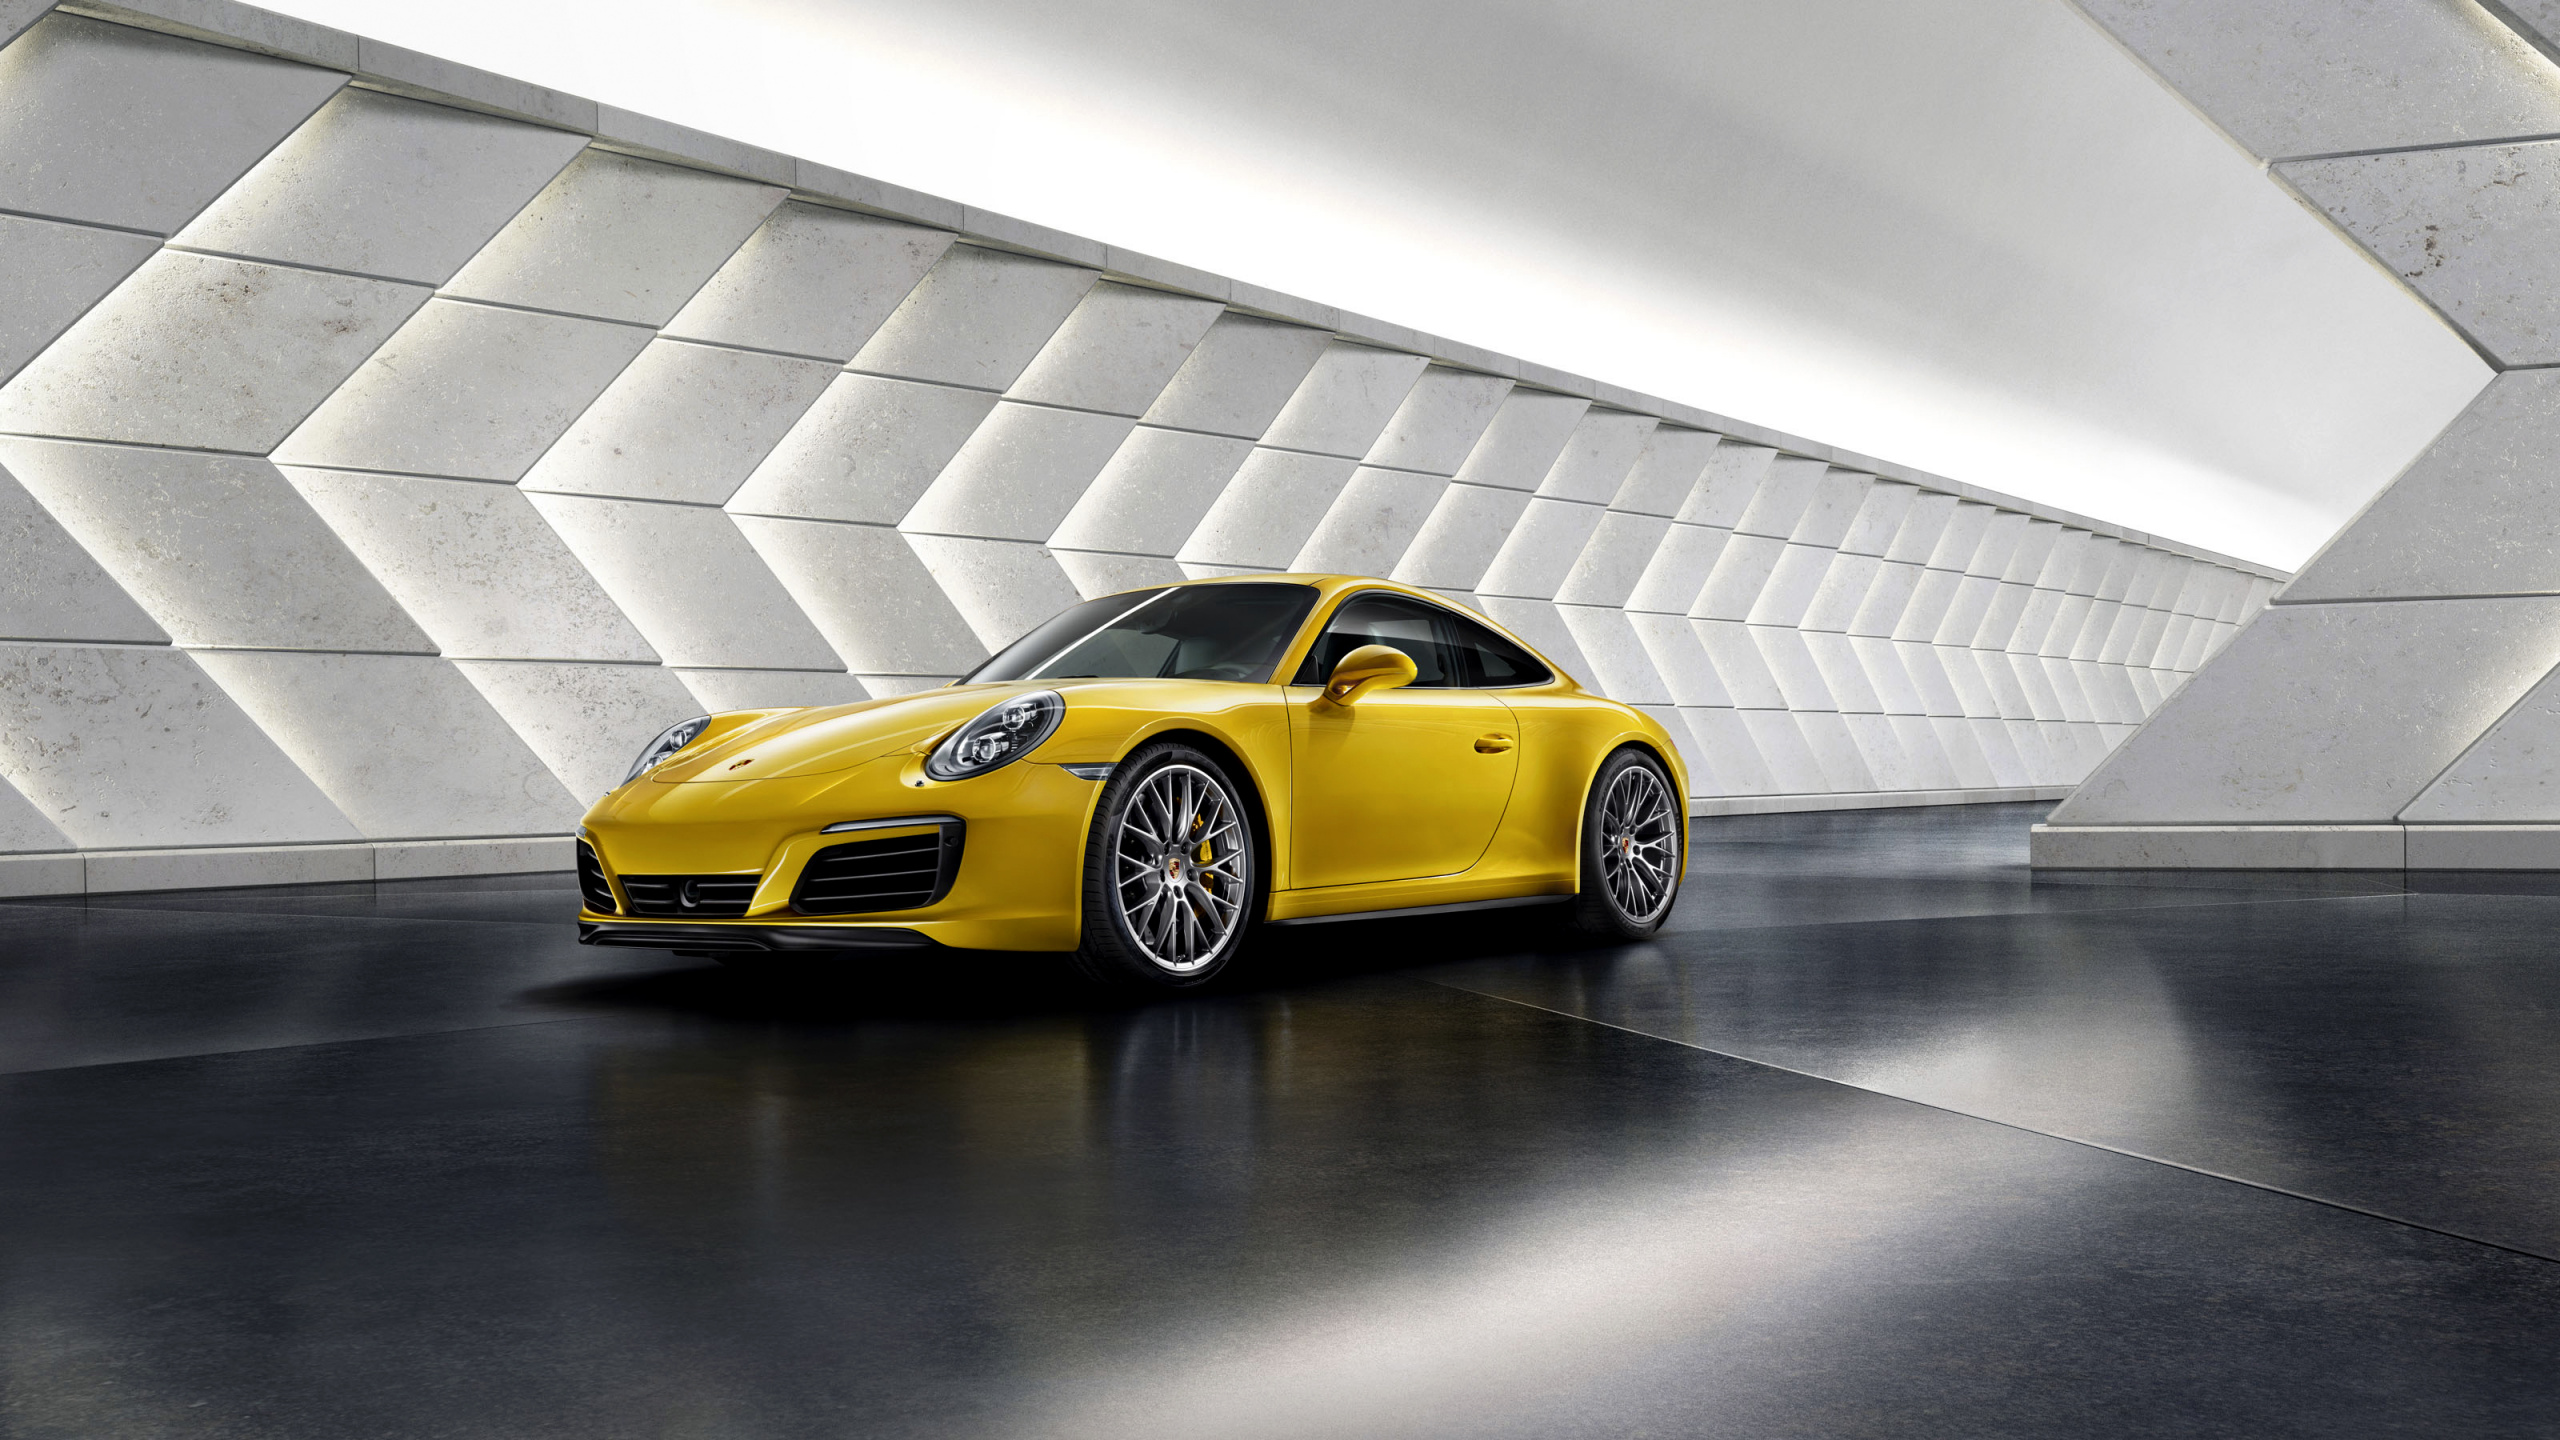 Gelber Porsche 911 Auf Grauem Betonpflaster Geparkt. Wallpaper in 2560x1440 Resolution